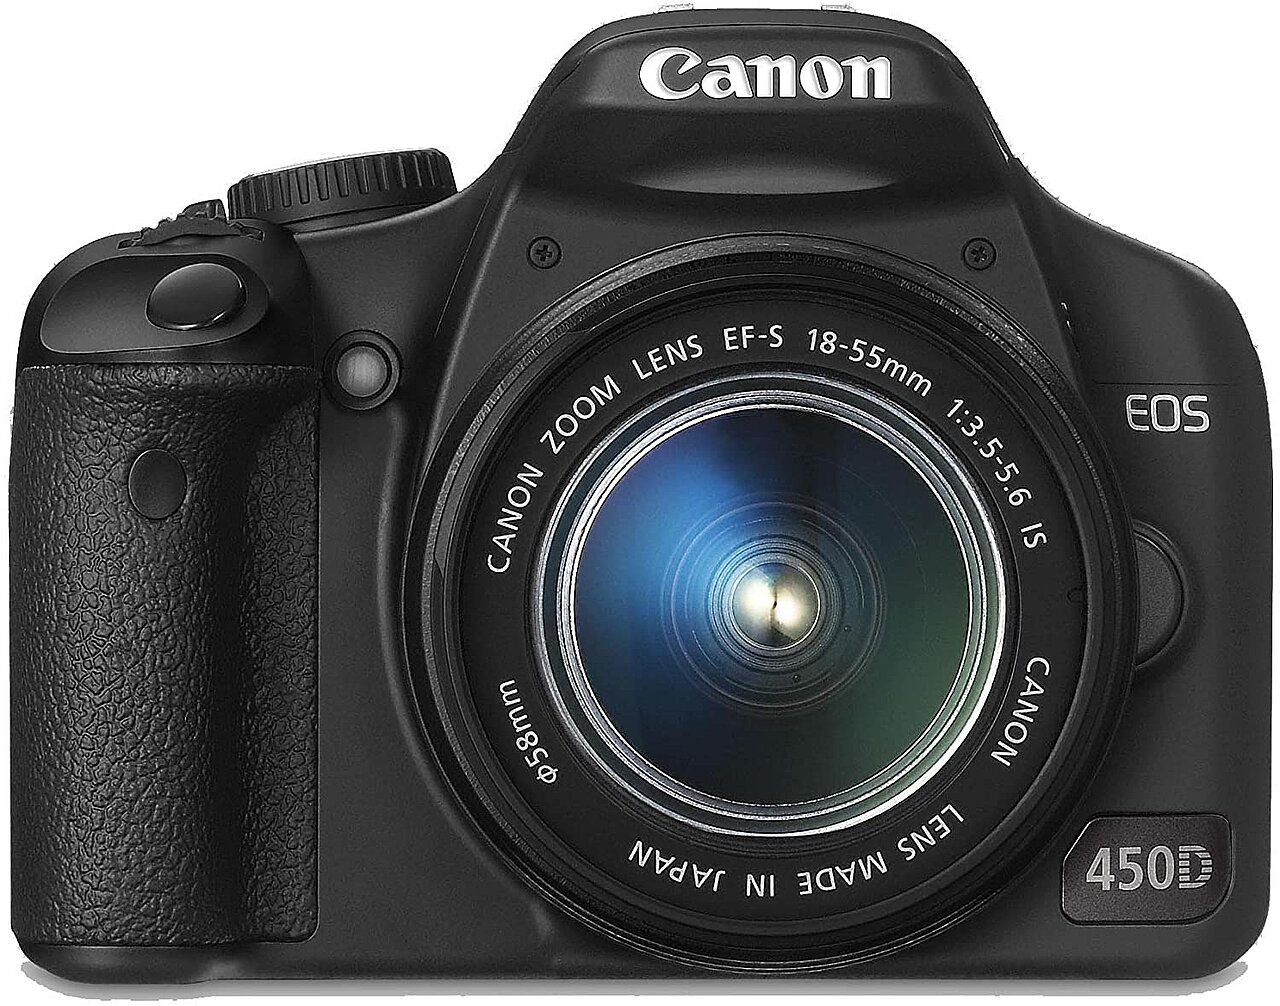 Bild Canon EOS 450D